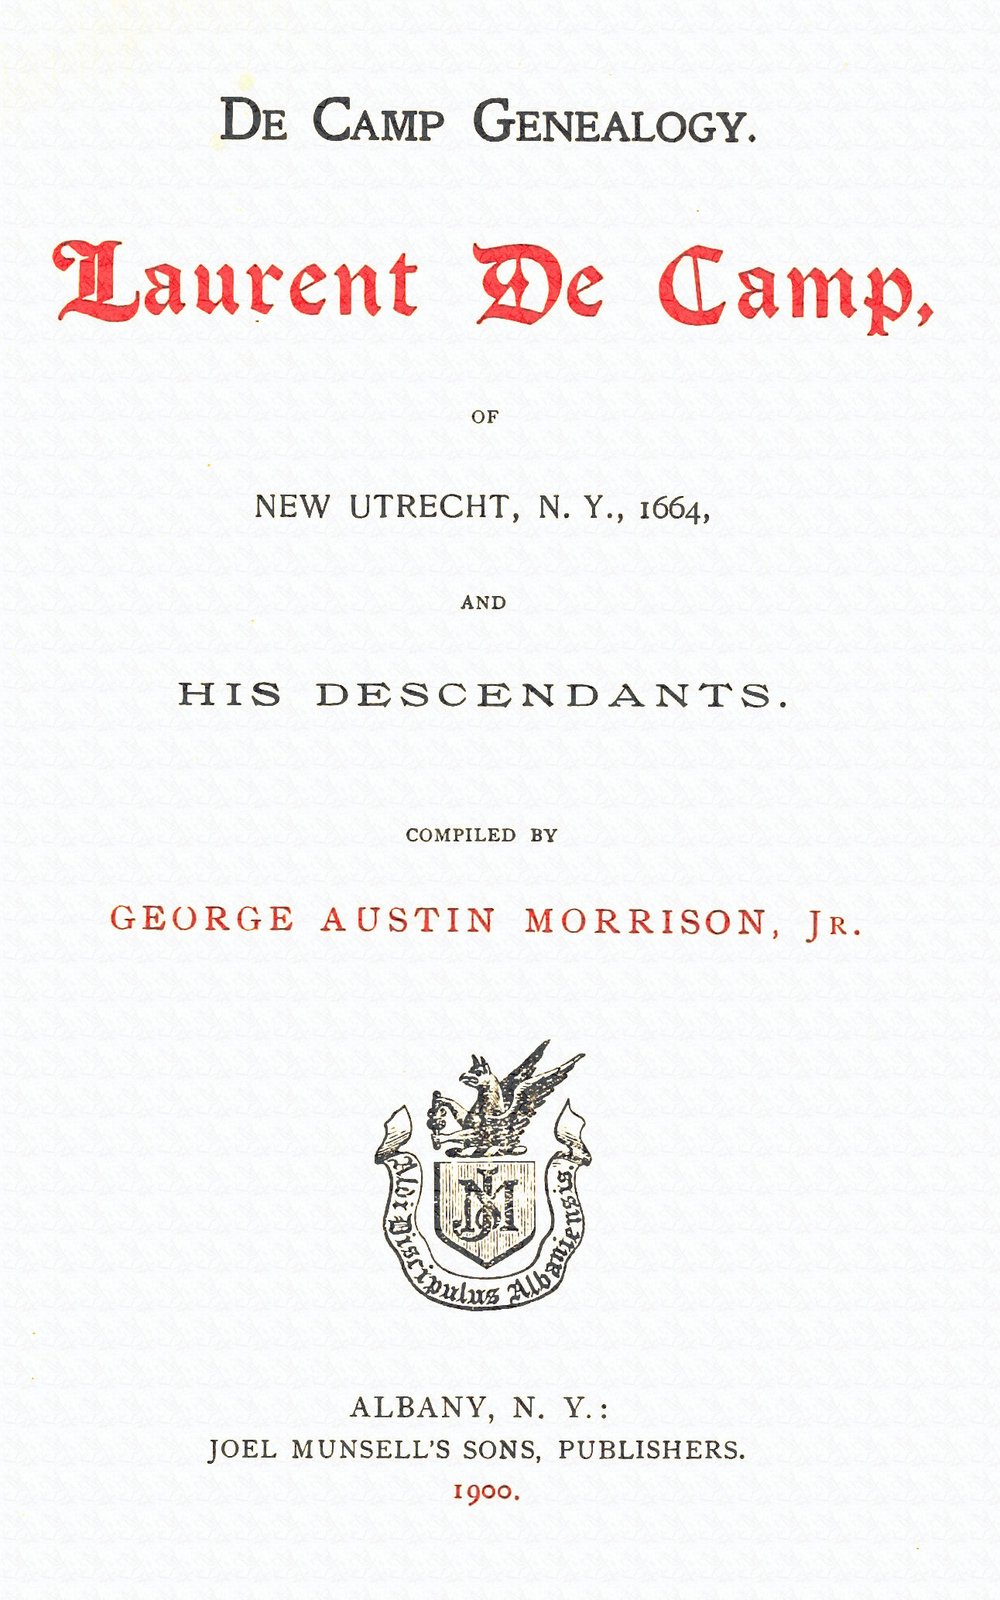 De Camp Genealogy: Laurent De Camp of New Utrecht, N.Y., 1664, and his descendants